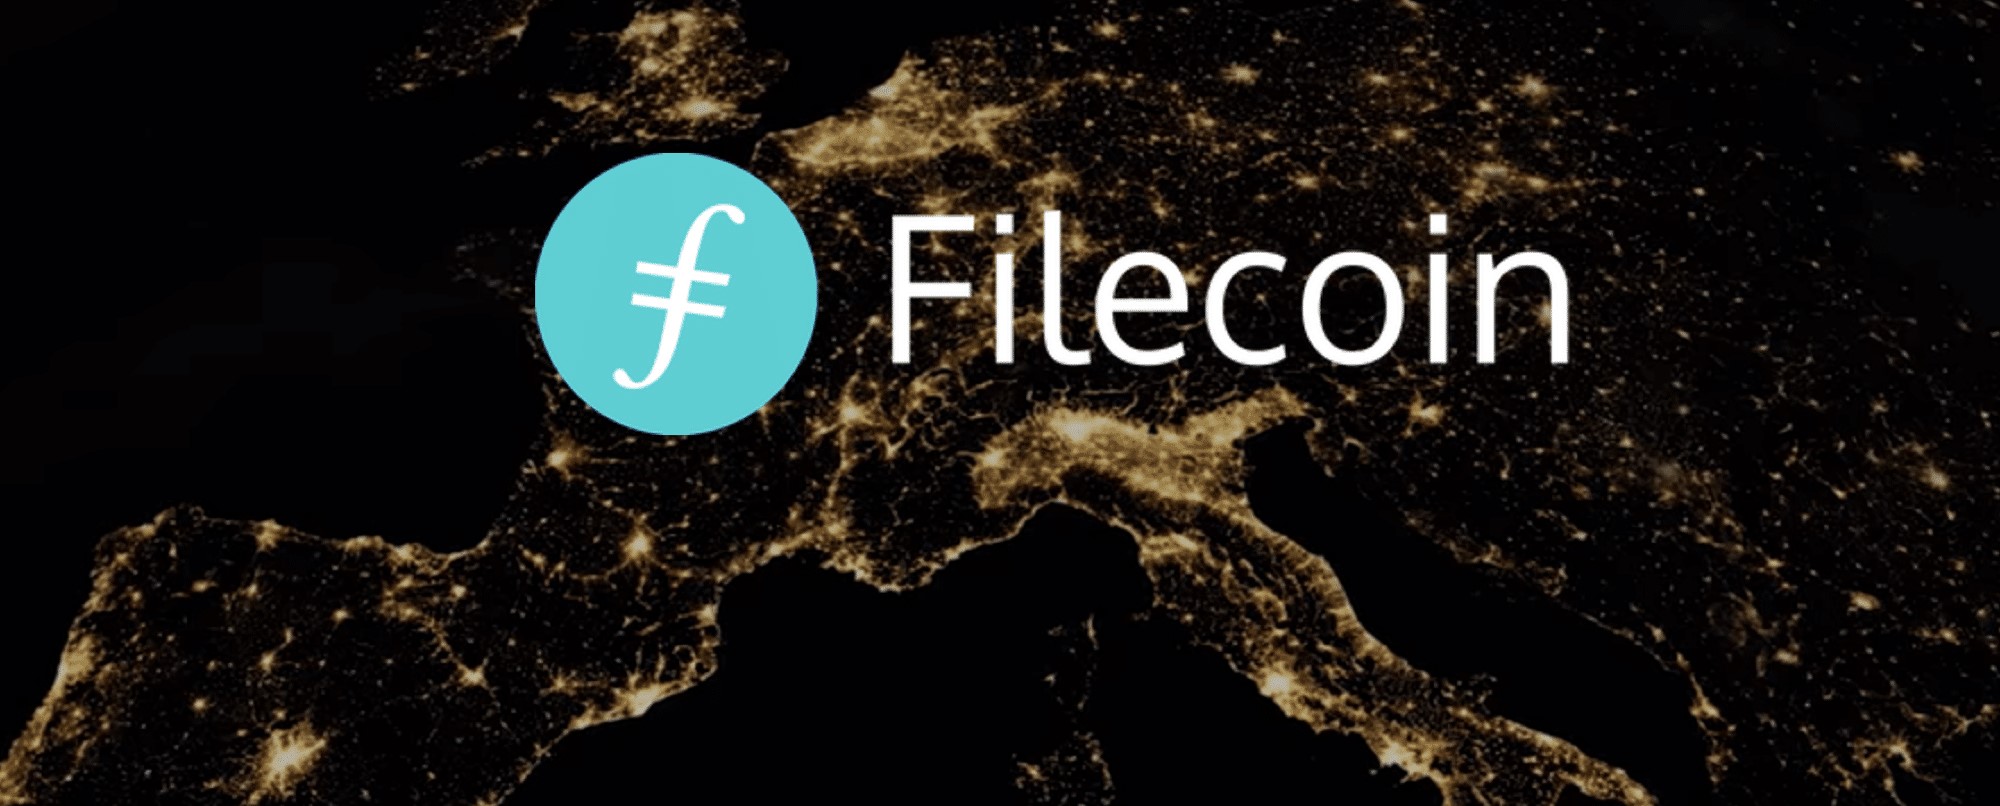 Filecoin از ارزهای برتر وب 3